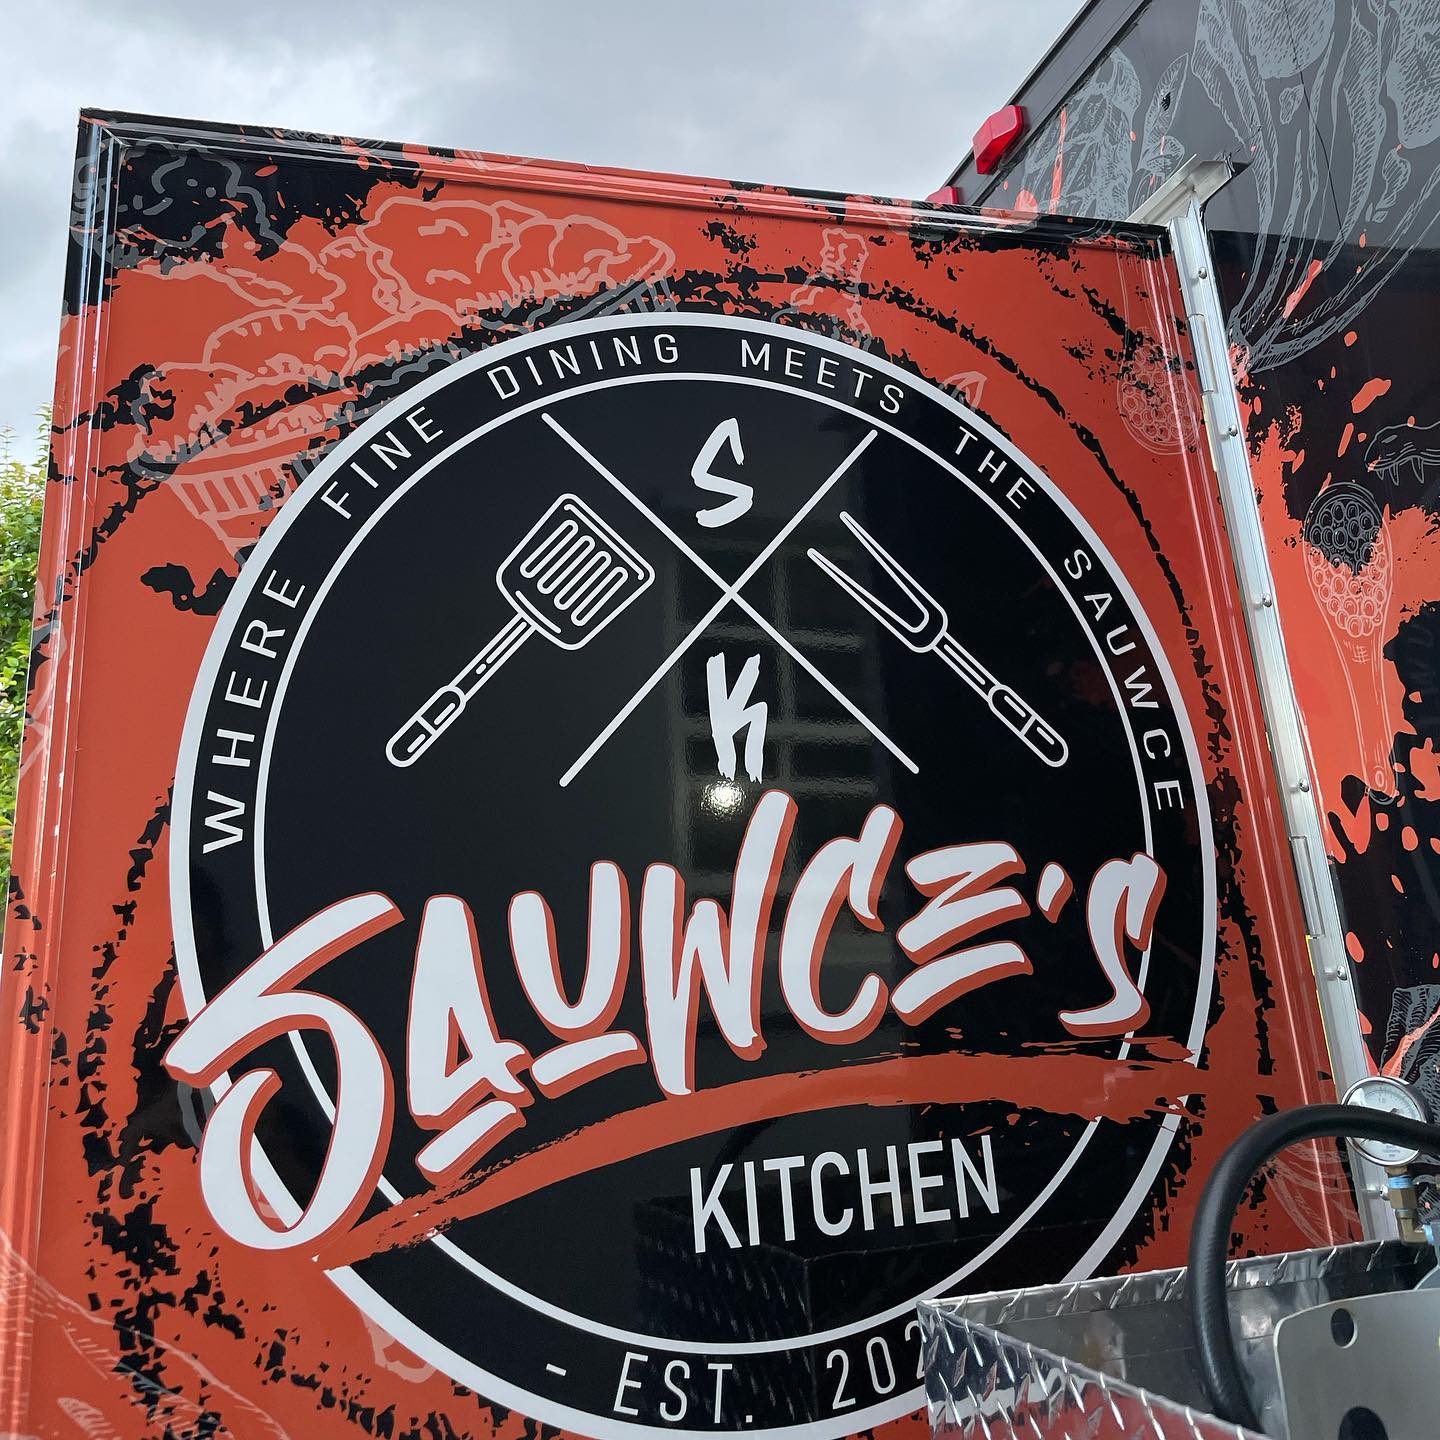 Sauwce’s Kitchen food truck FL